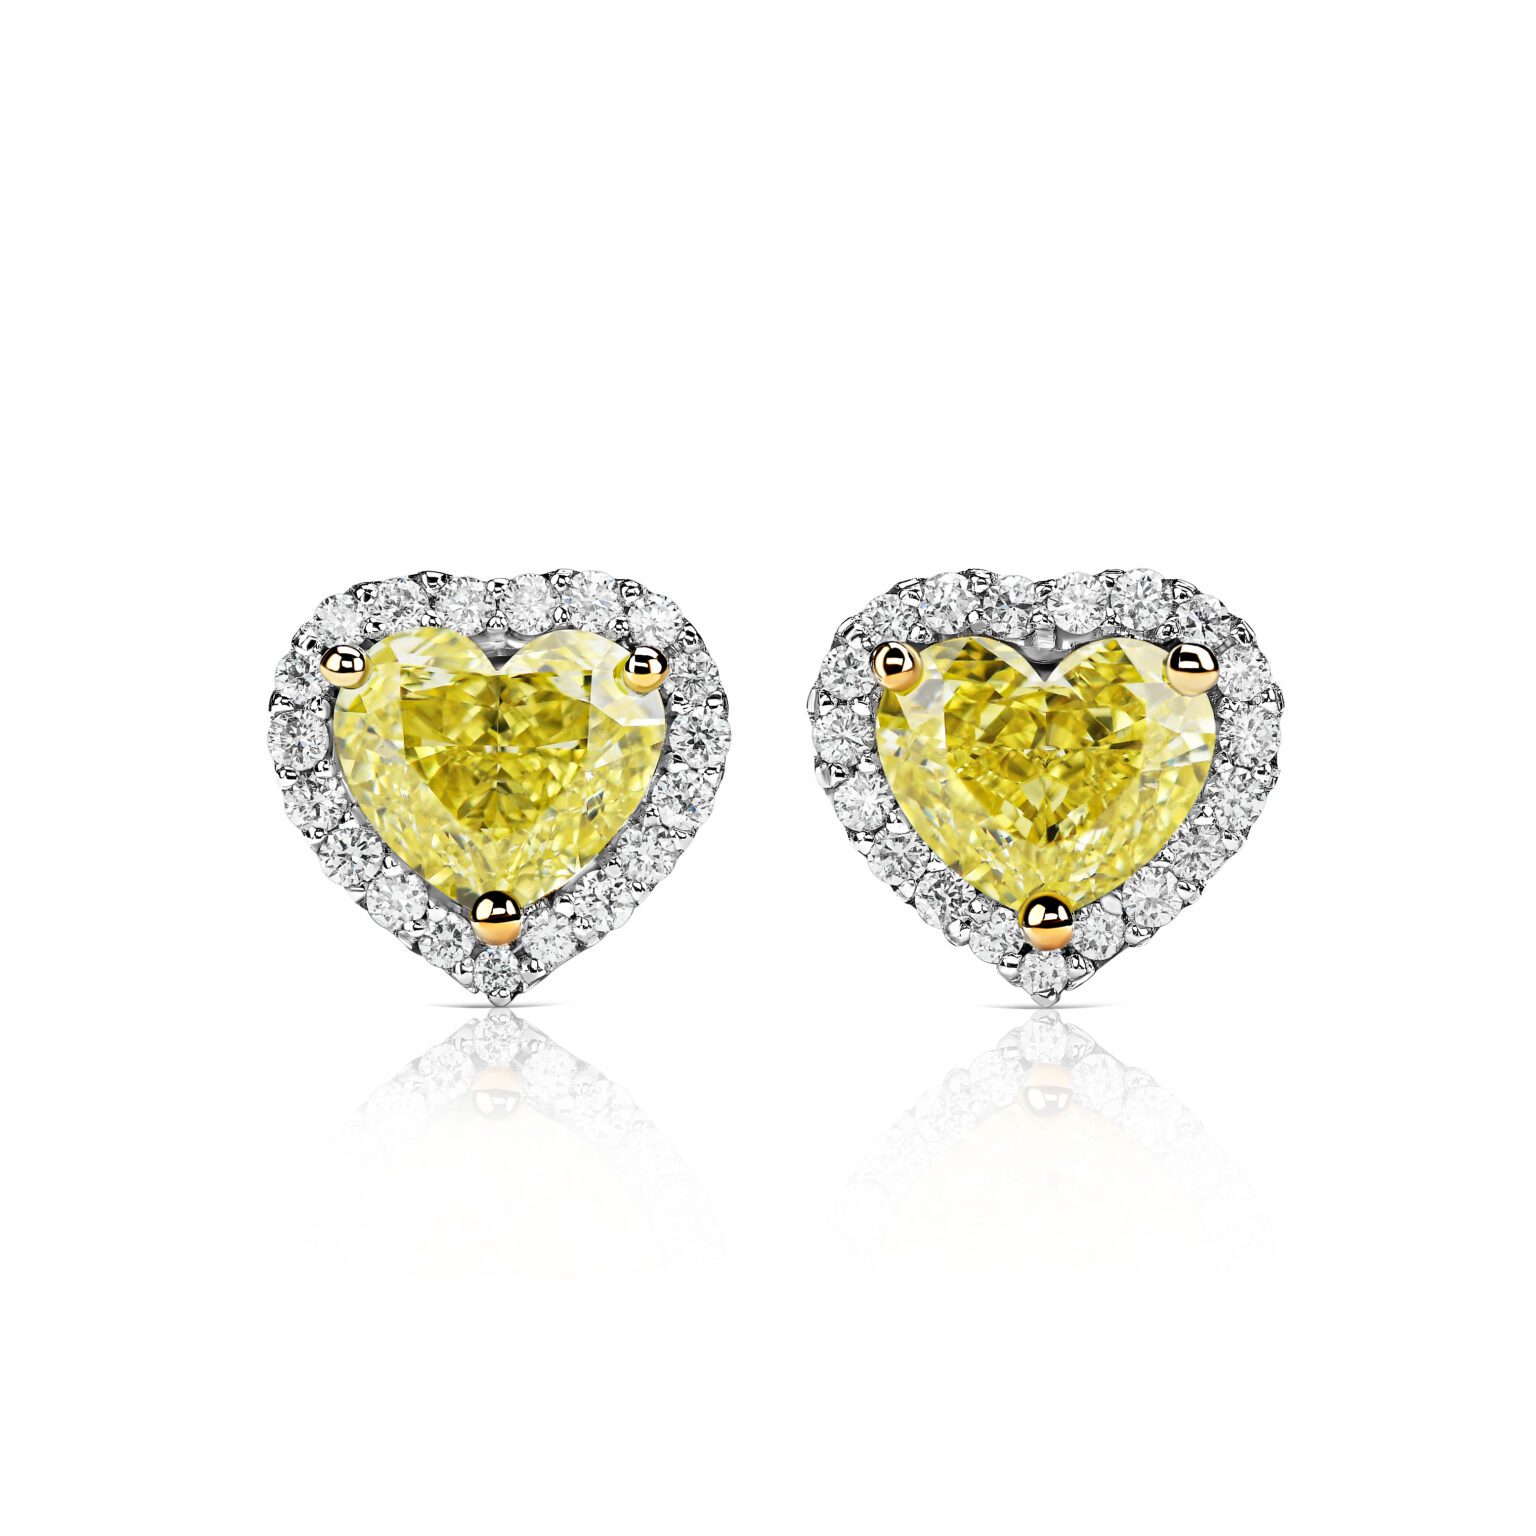 Yellow diamond stud earrings 1.09 ct